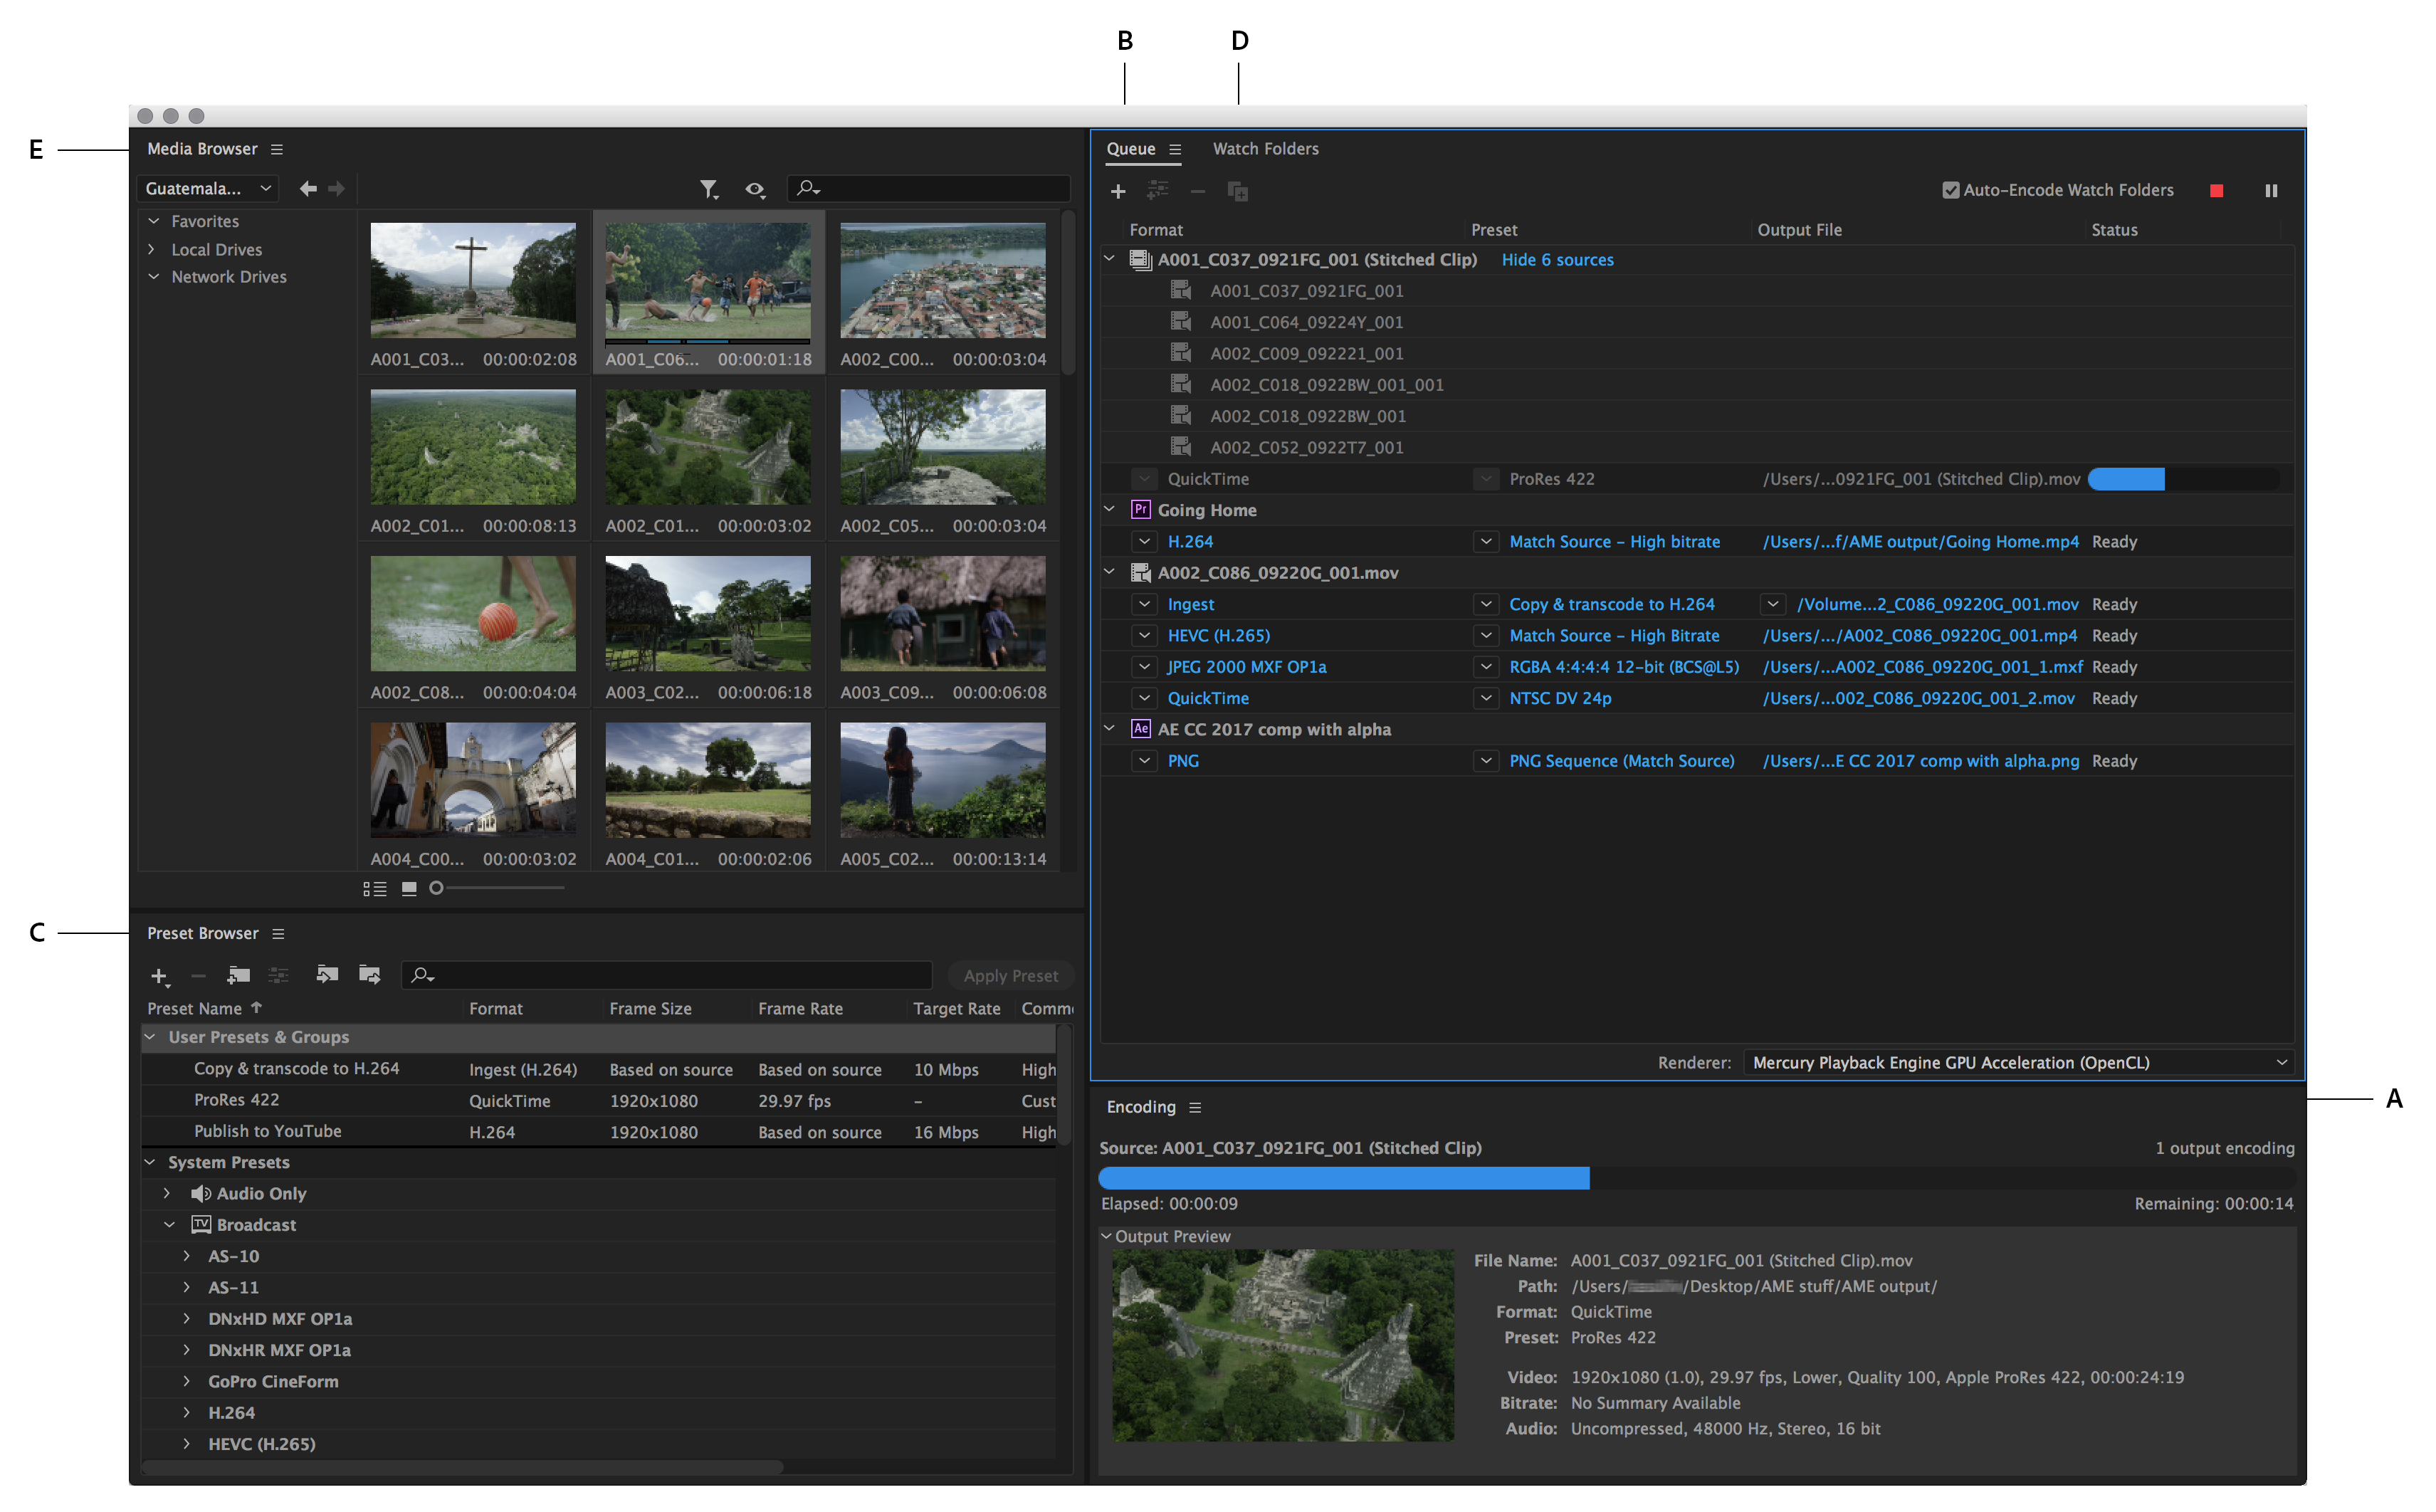 Adobe Media Encoder 2022 v22.5.0.57 | Pre-Activated Full Version